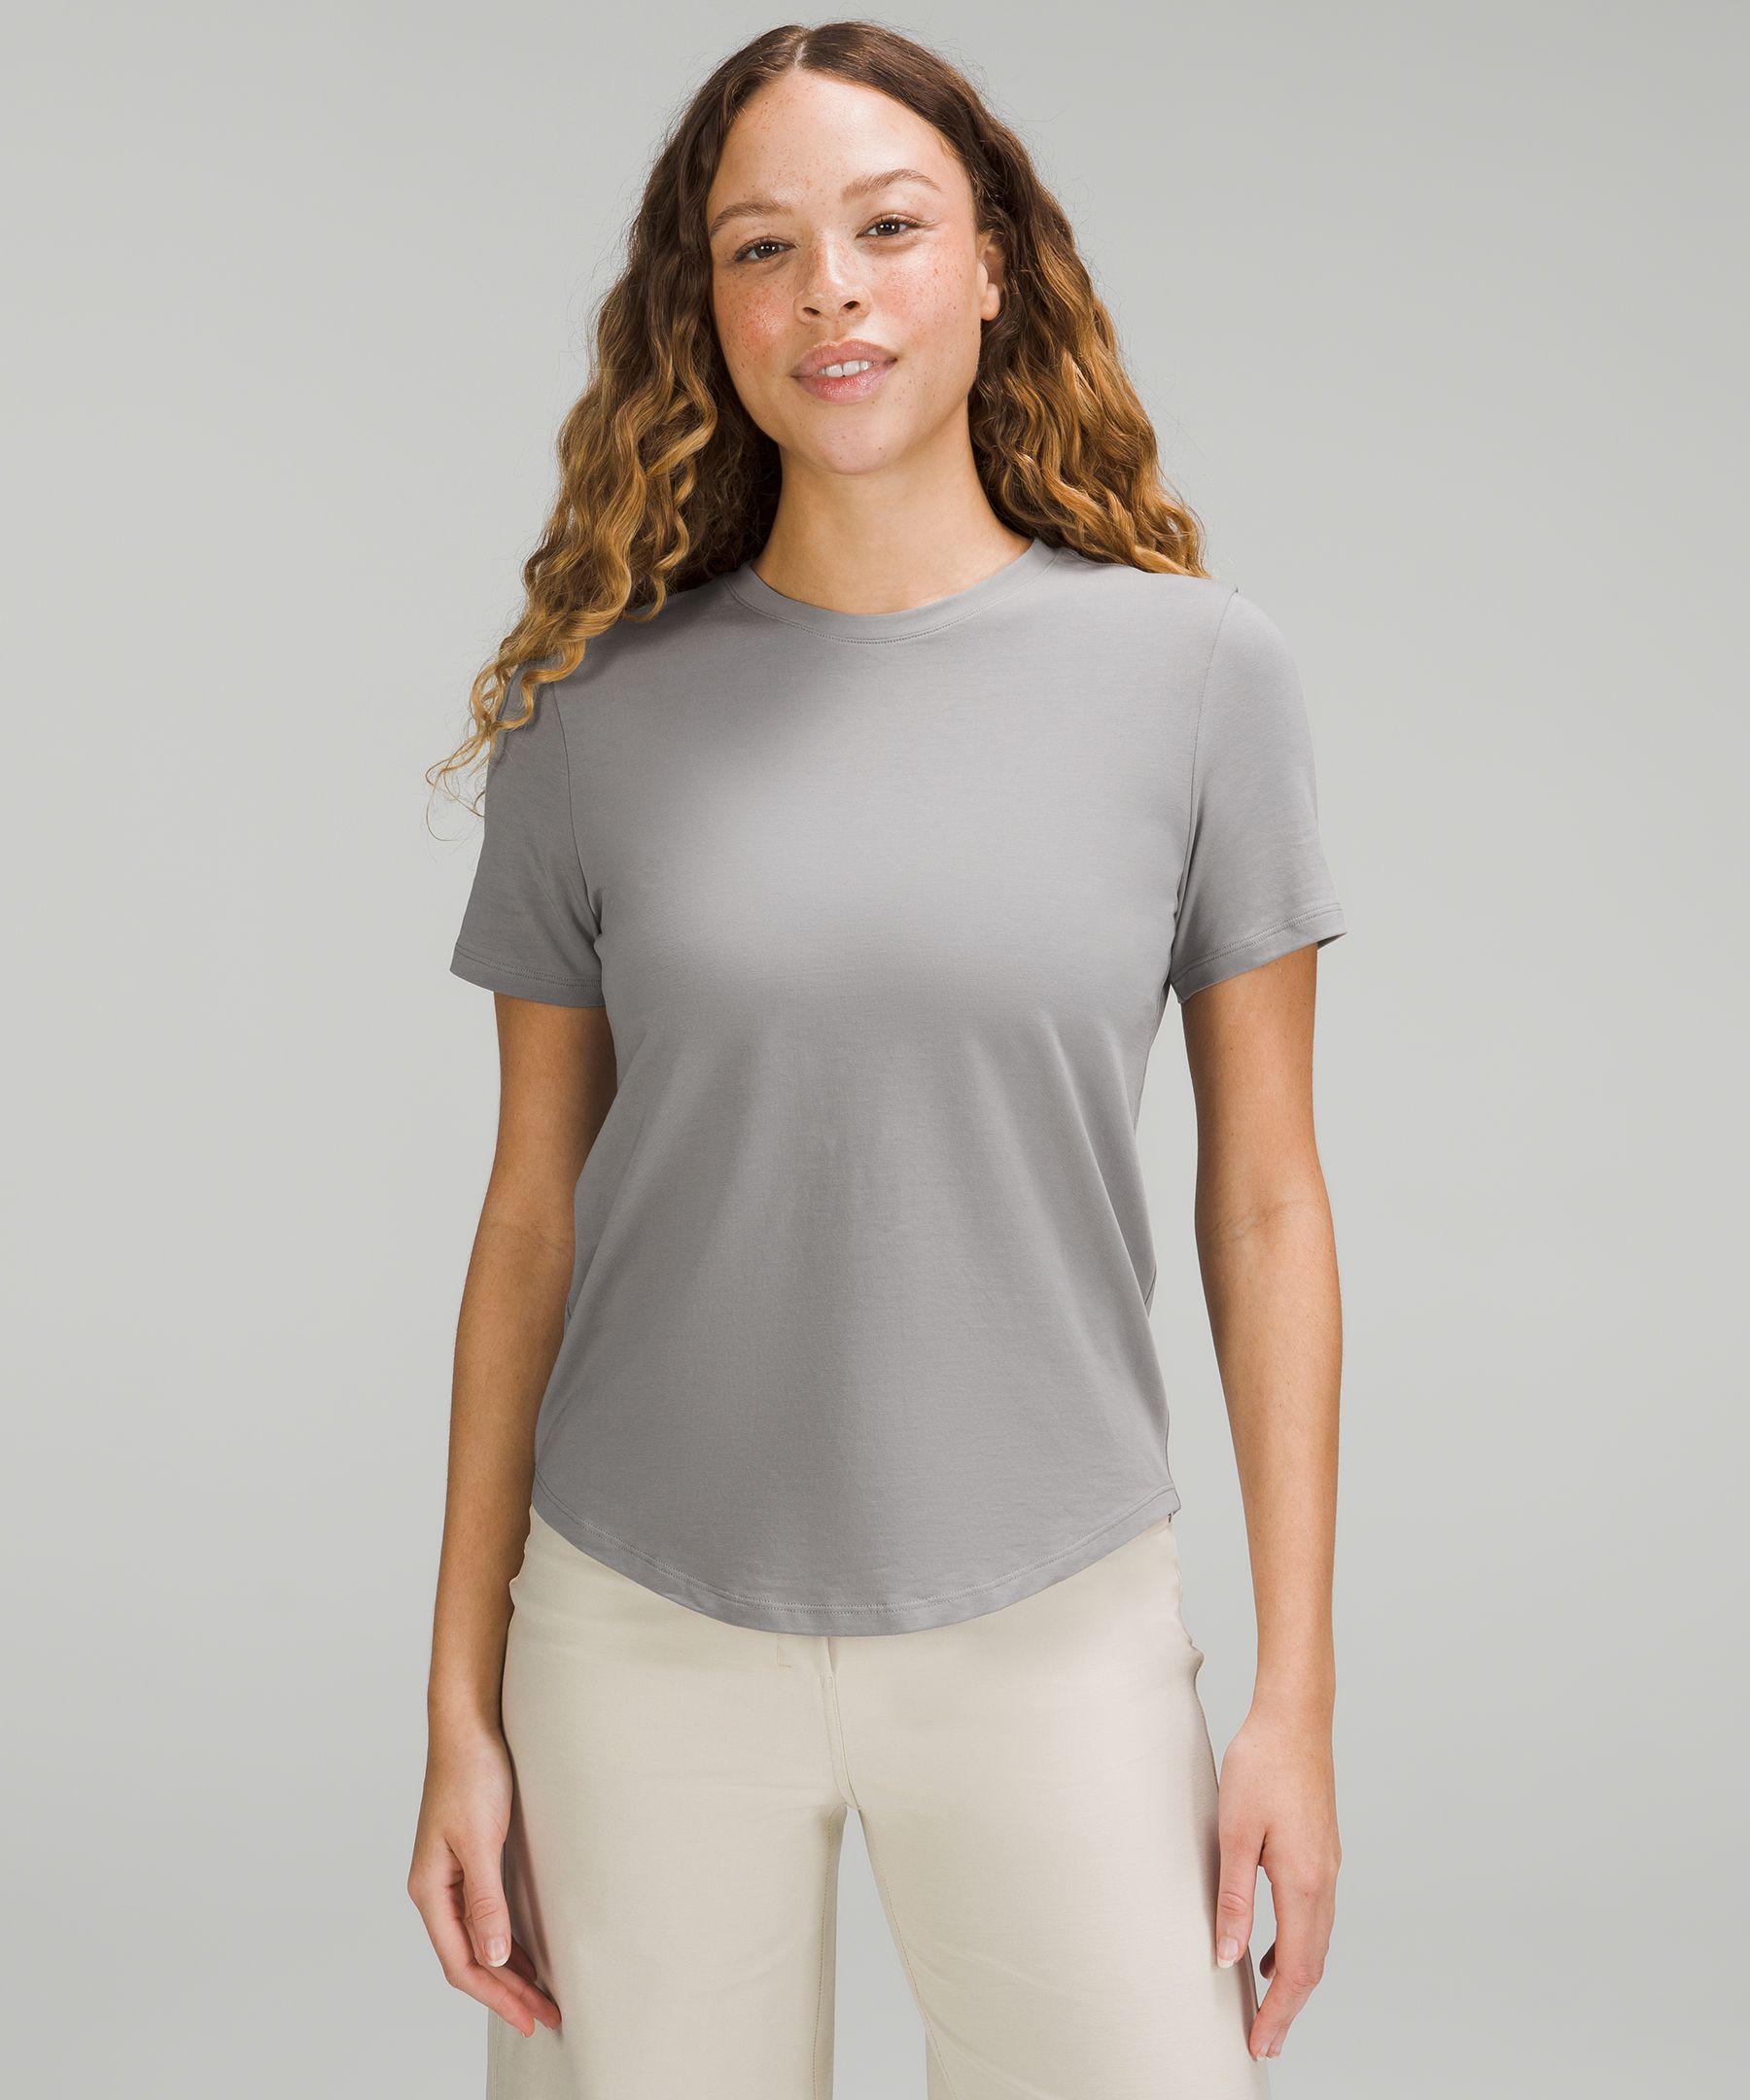 Women's Short Sleeve Shirts | lululemon